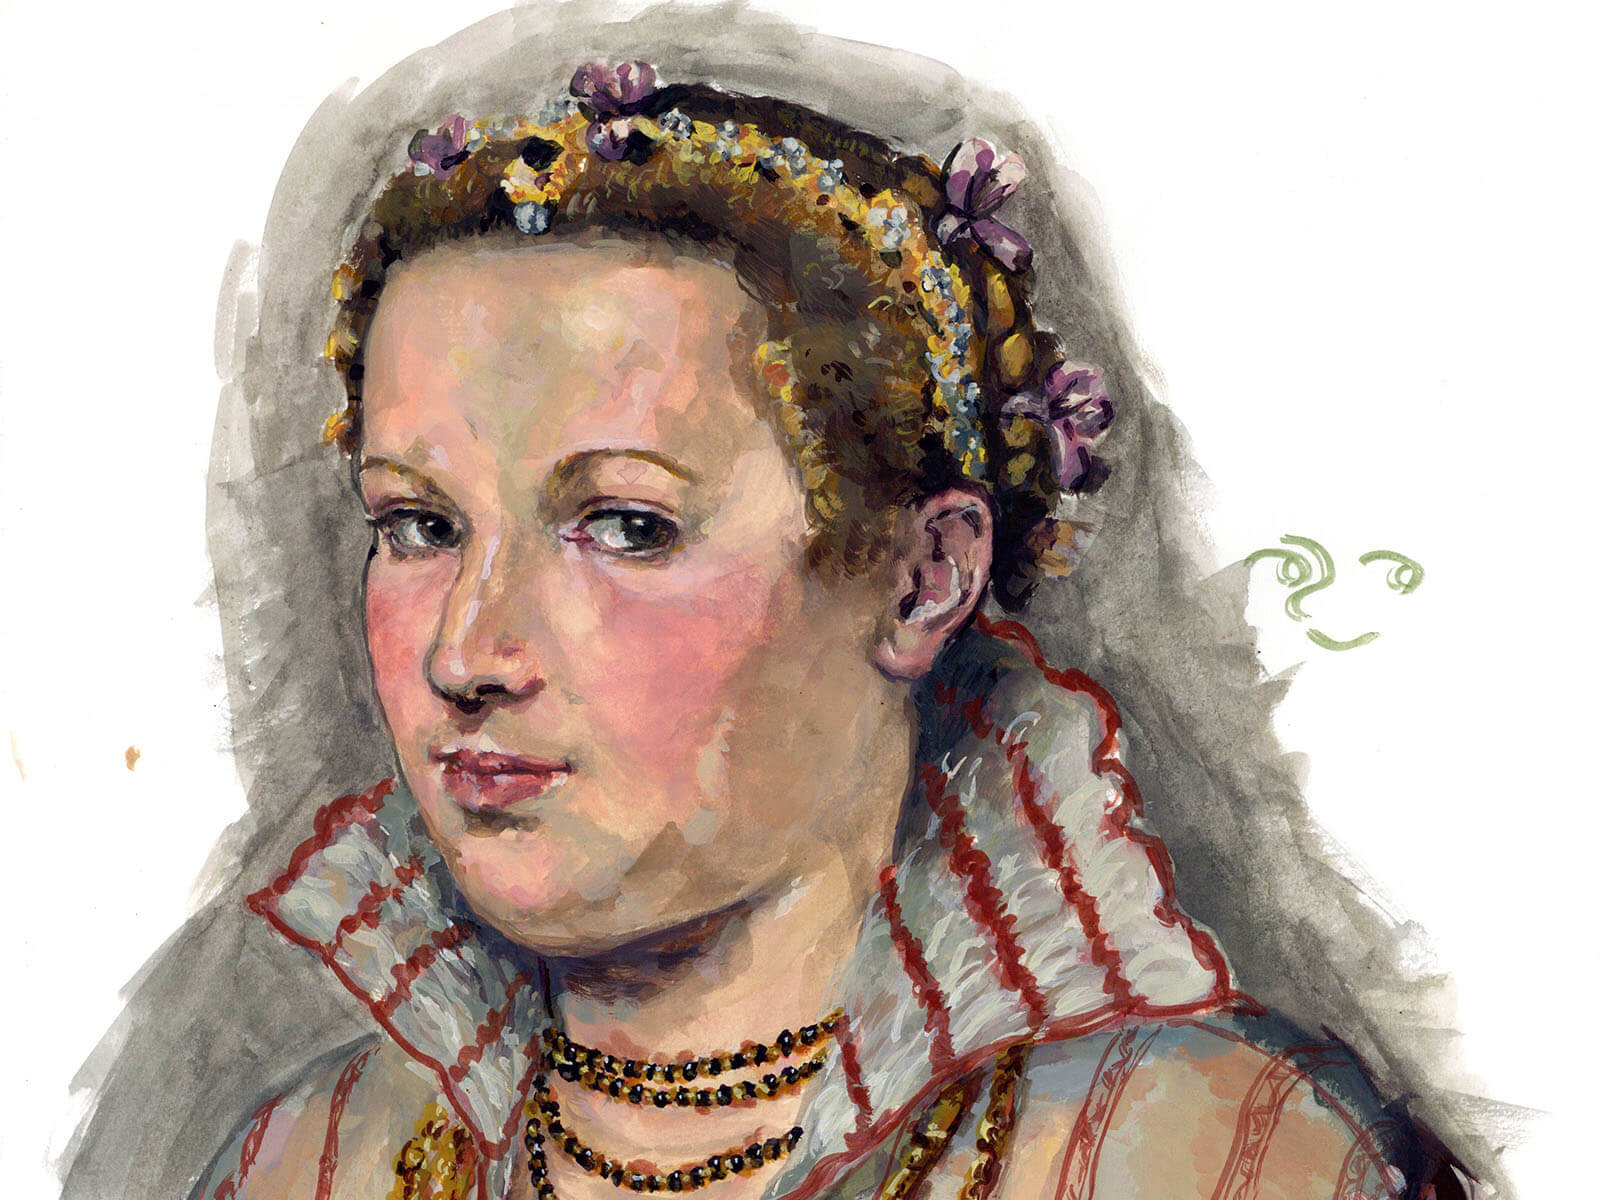 Portrait of a woman in Renaissance-era garb.